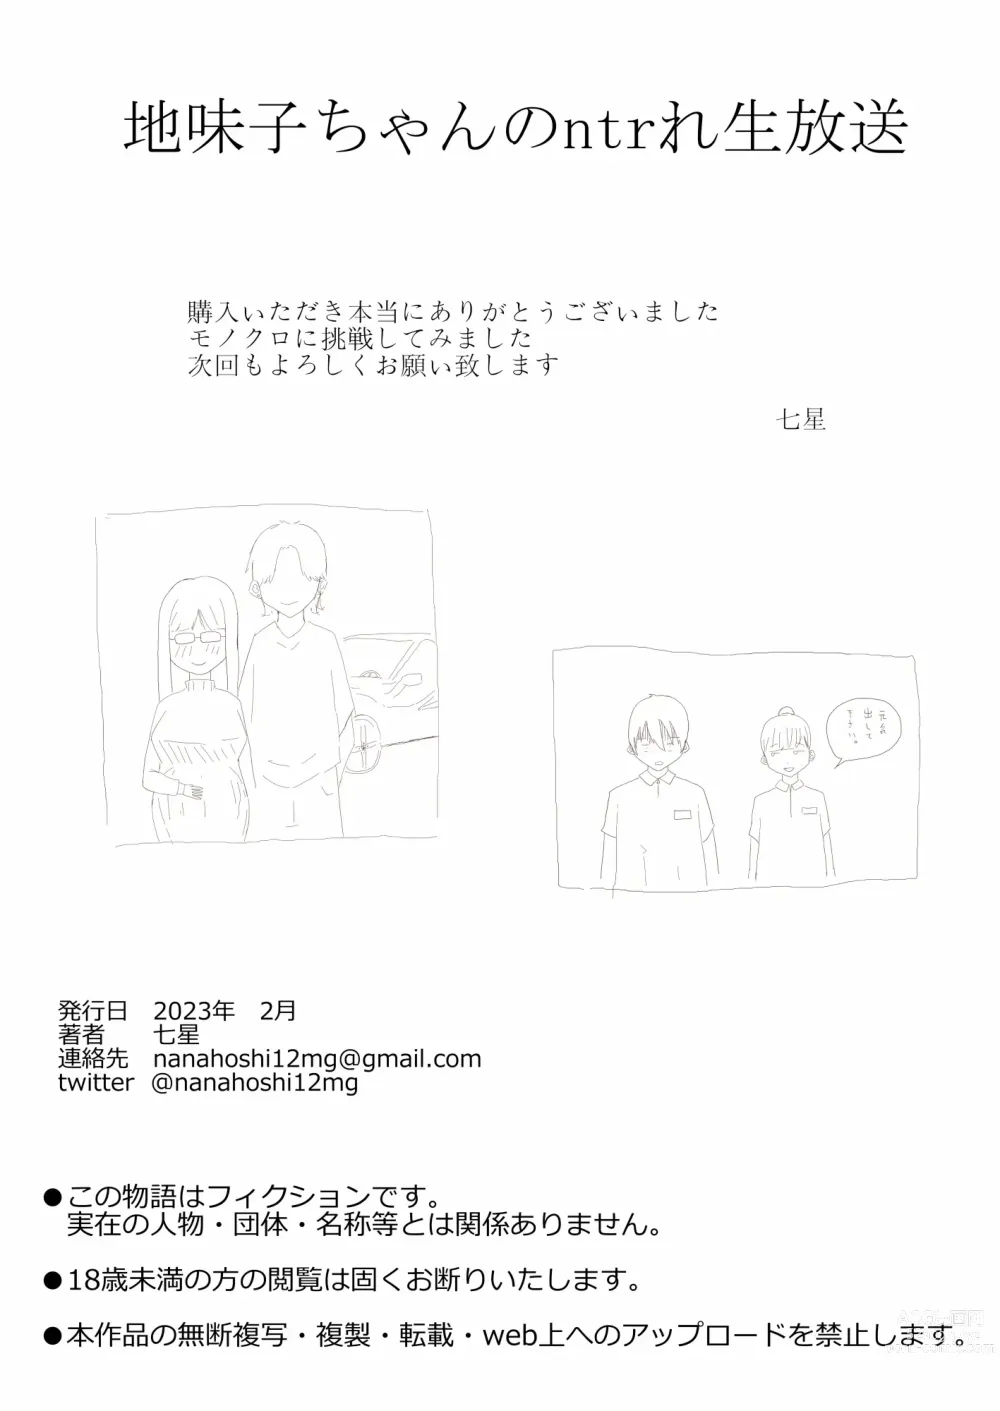 Page 36 of doujinshi Jimiko-chan no ntrre Namahousou